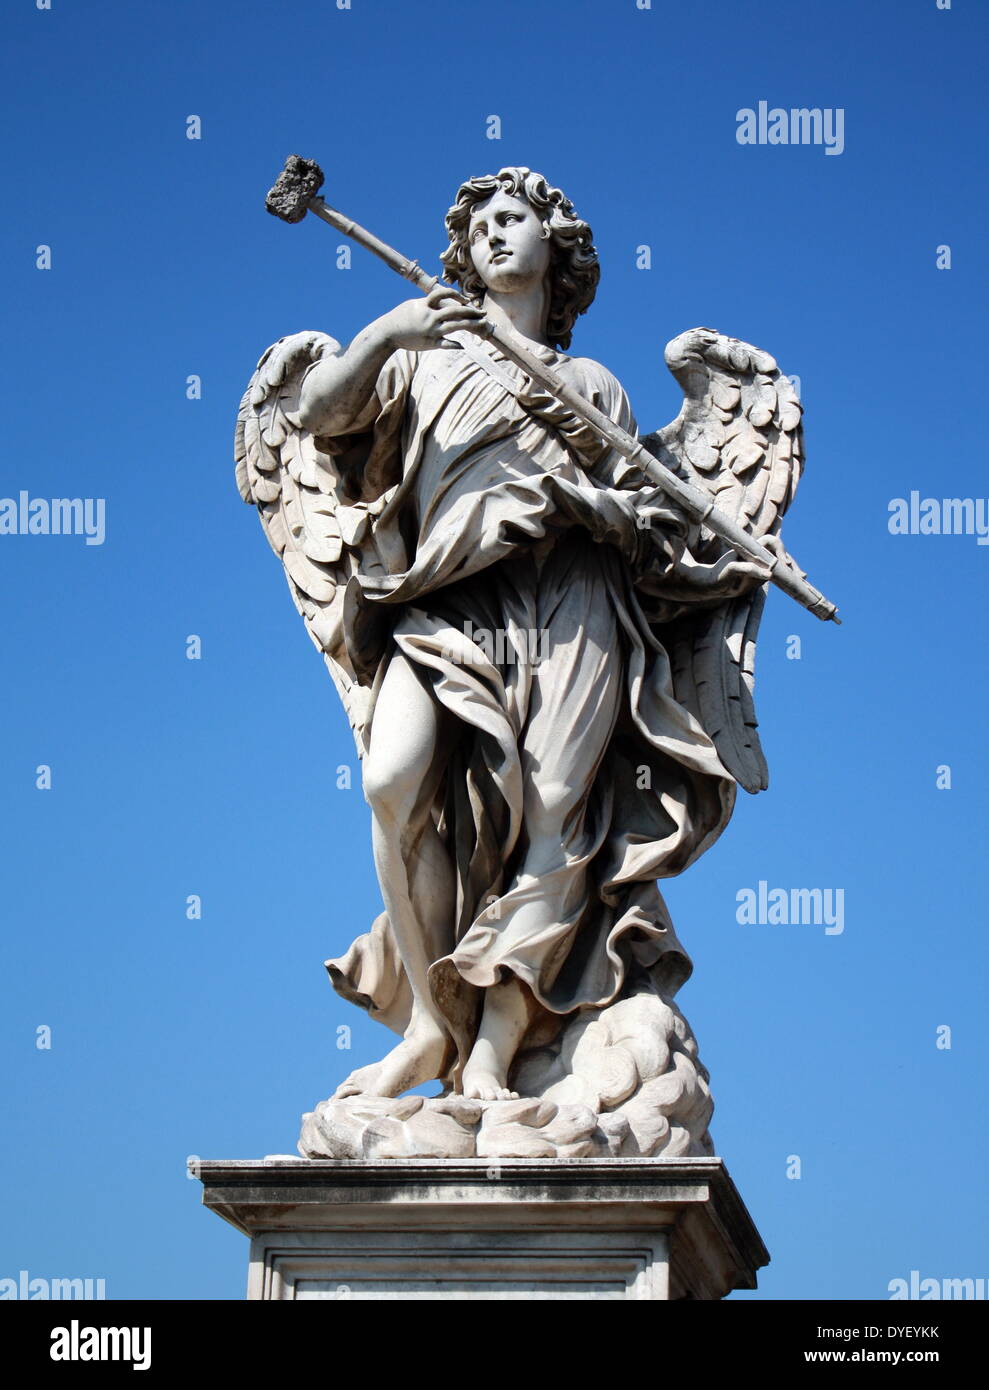 Engel Statue von der Ponte Sant'Angelo, (ehemals Aelian Brücke genannt) eine Brücke über den Tiber in Rom, Italien. Es wurde in 134 AD durch römische Kaiser Hadrian abgeschlossen, und es verbindet das Stadtzentrum mit seinen ehemaligen Mausoleum, die jetzt das Castel Sant'Angelo. Die Brücke mit kolossalen Statuen der Engel Holding die Instrumente der Leidenschaft geschmückt ist. Stockfoto